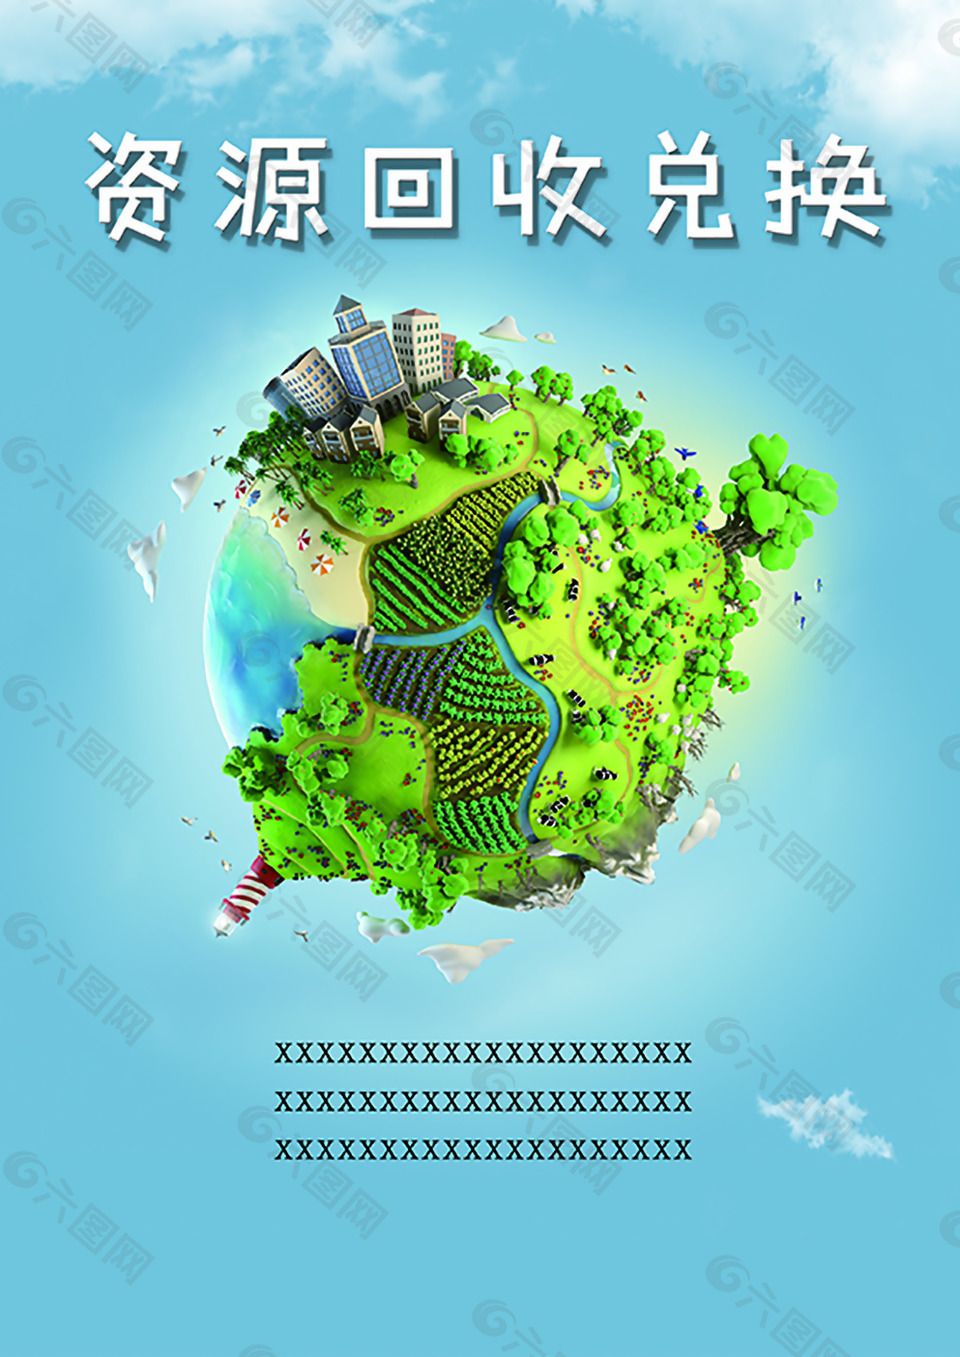 绿色环保蓝色地球资源回收分类海报模板